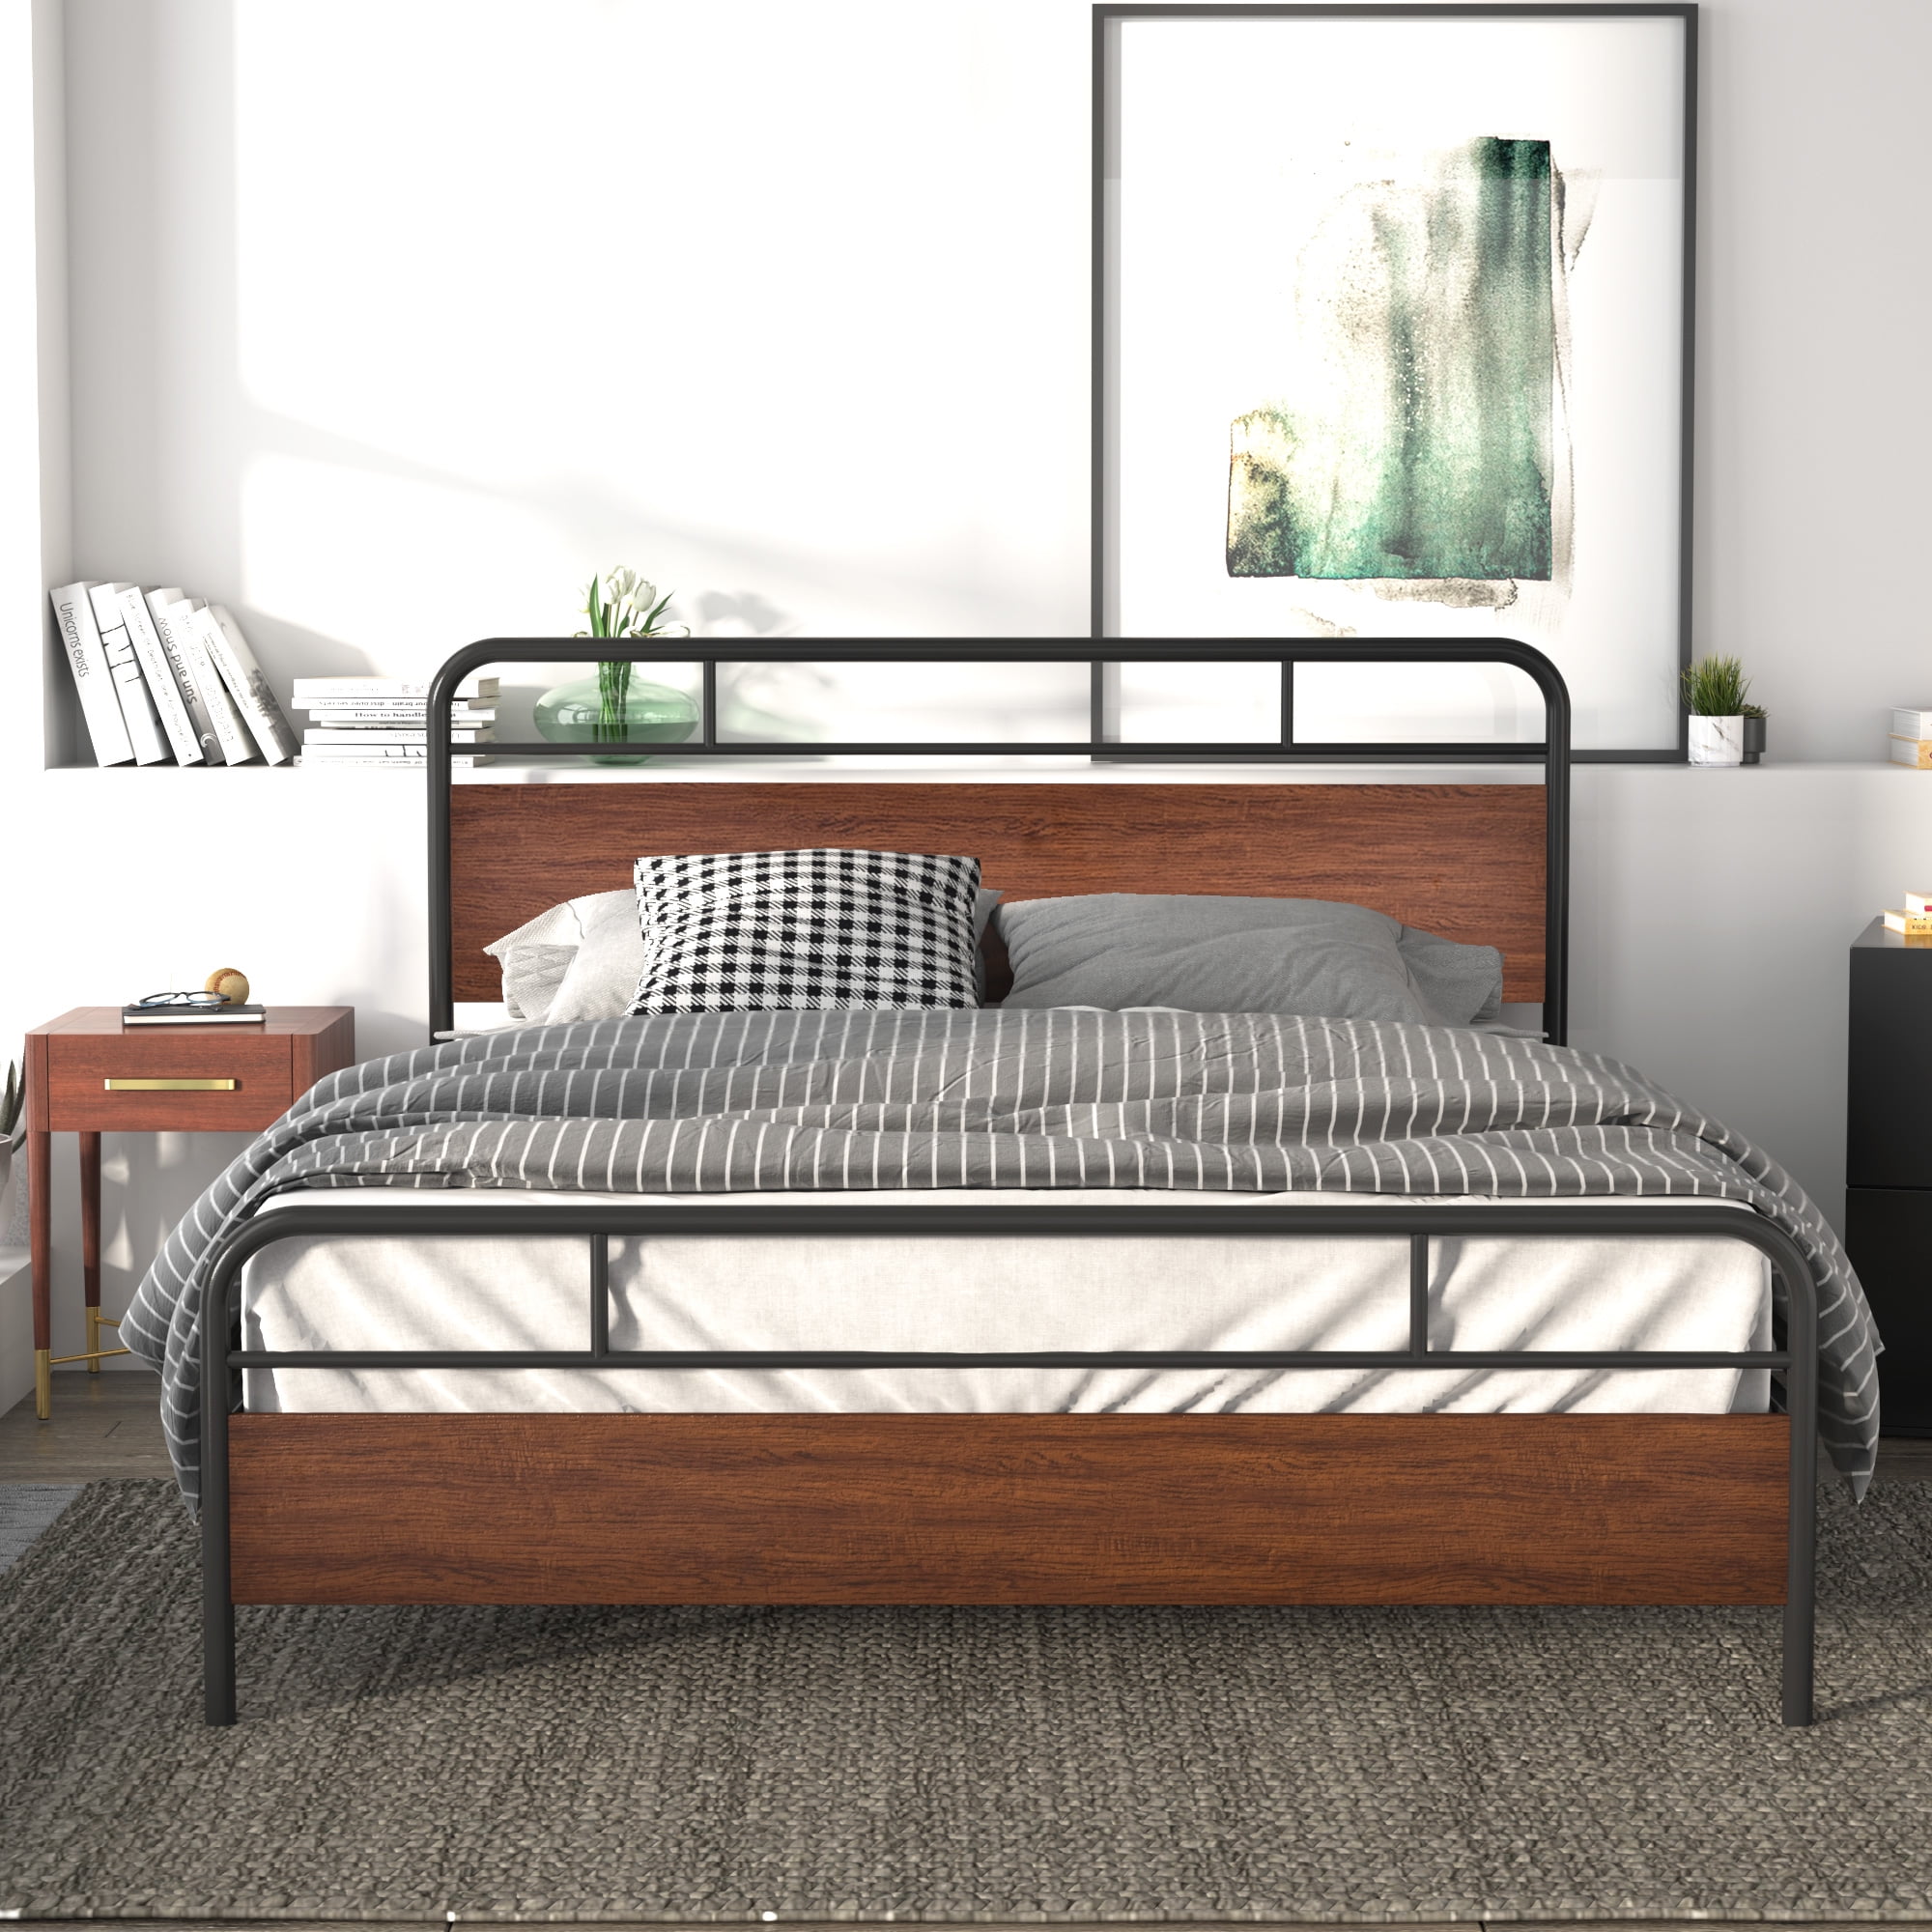 Rest Haven Metal Adjustable Bed Frame, Full Size Bed Frame With Wheels